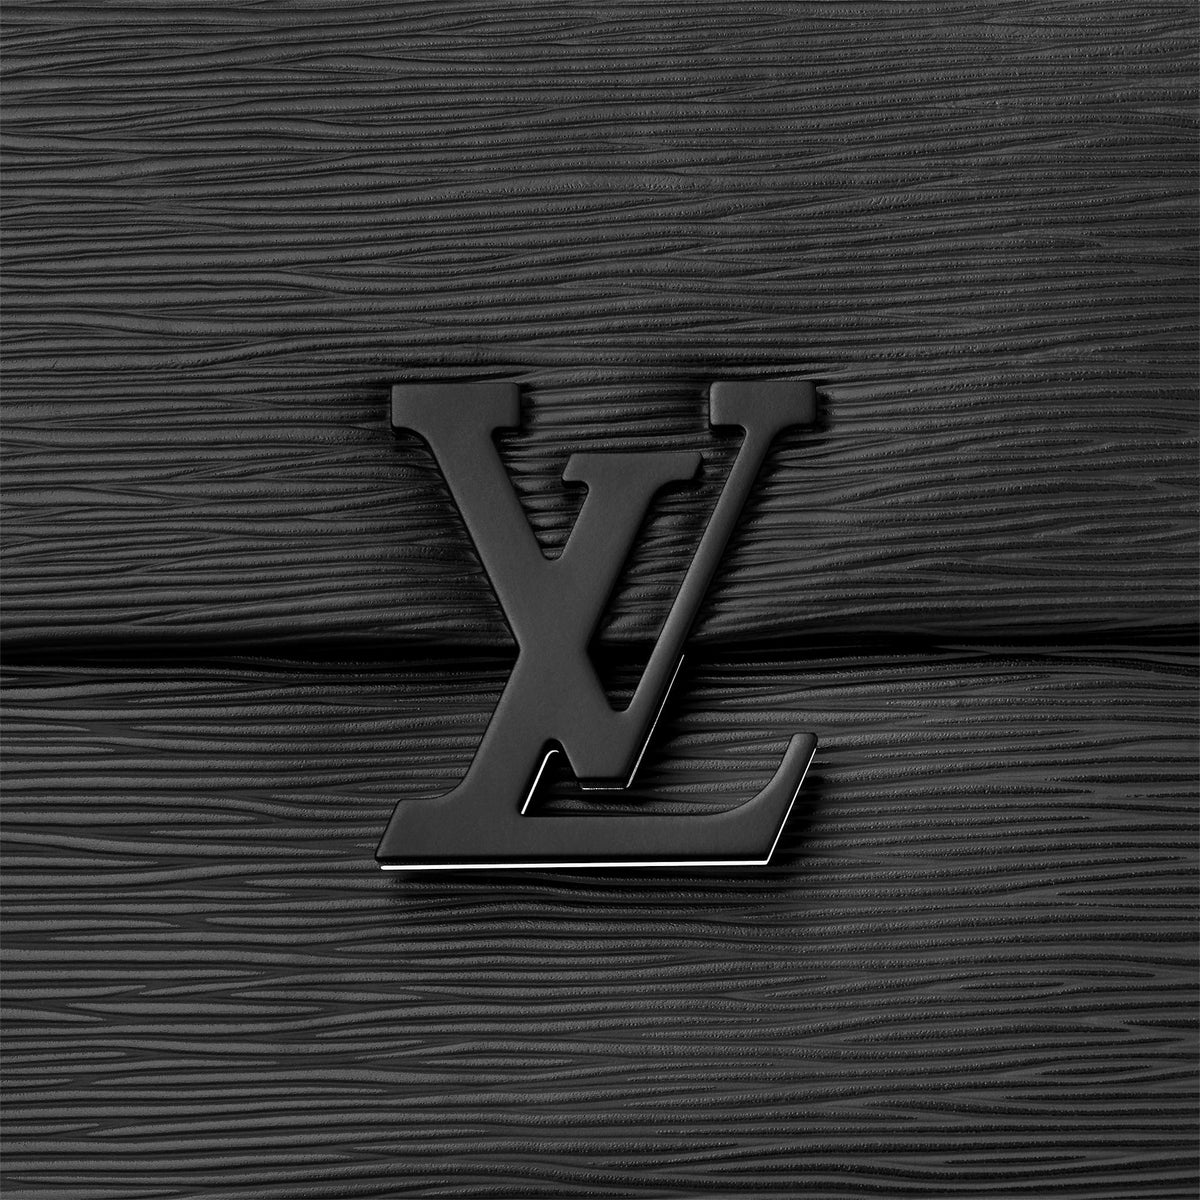 Louis Vuitton Grenelle PM Noir